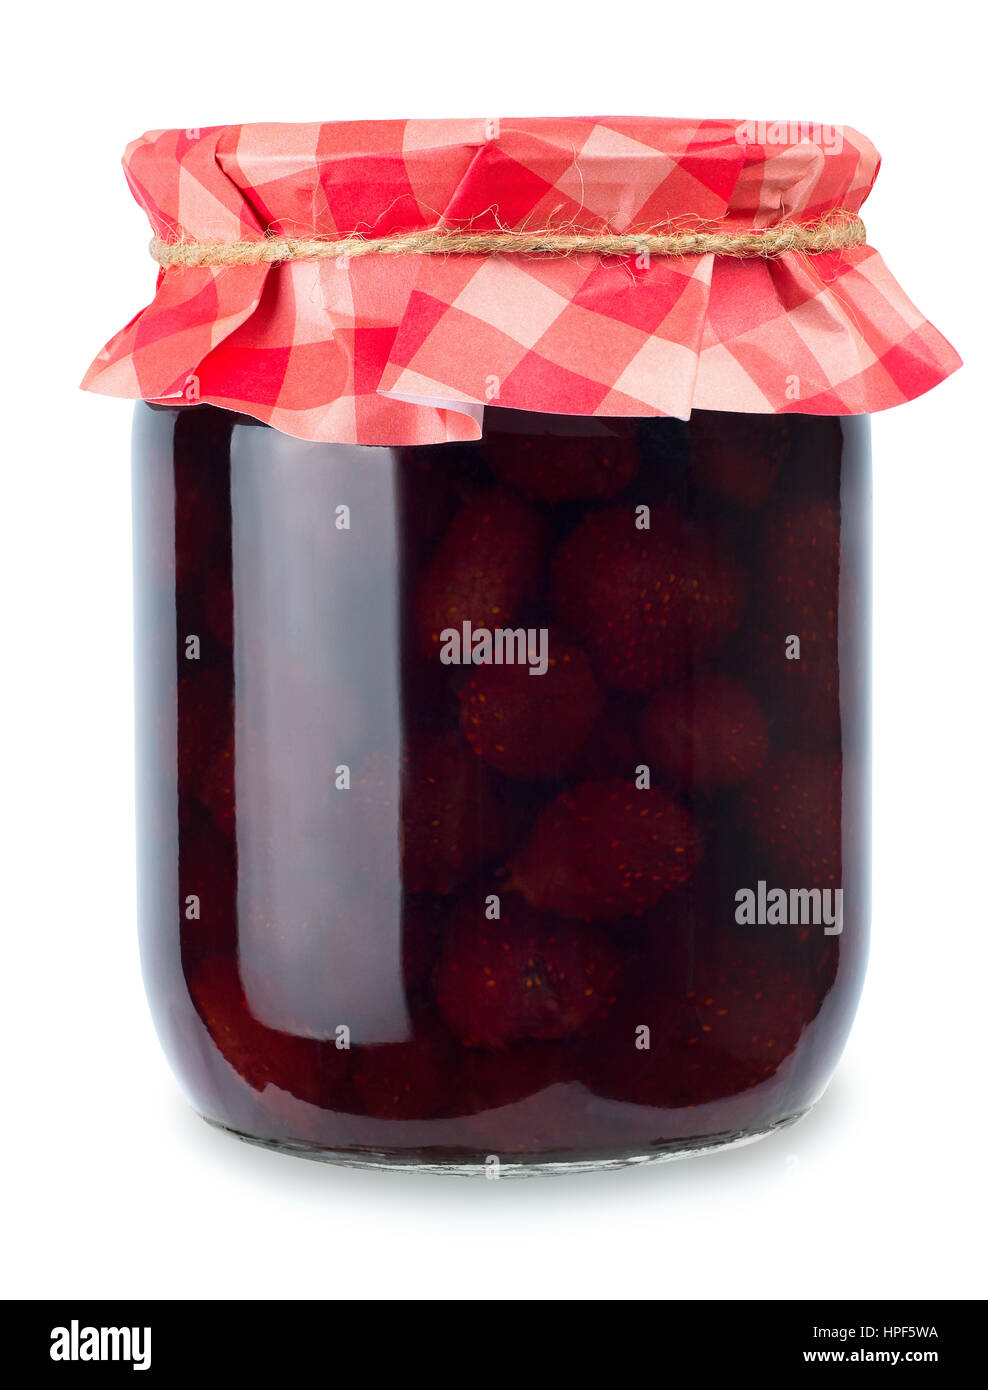 Erdbeer-Marmelade. Glas von Strawberry jam isolierten auf weißen Hintergrund. Konservierten Früchten. Hausgemachte Erdbeermarmelade in Glas mit Papier überzogen Stockfoto